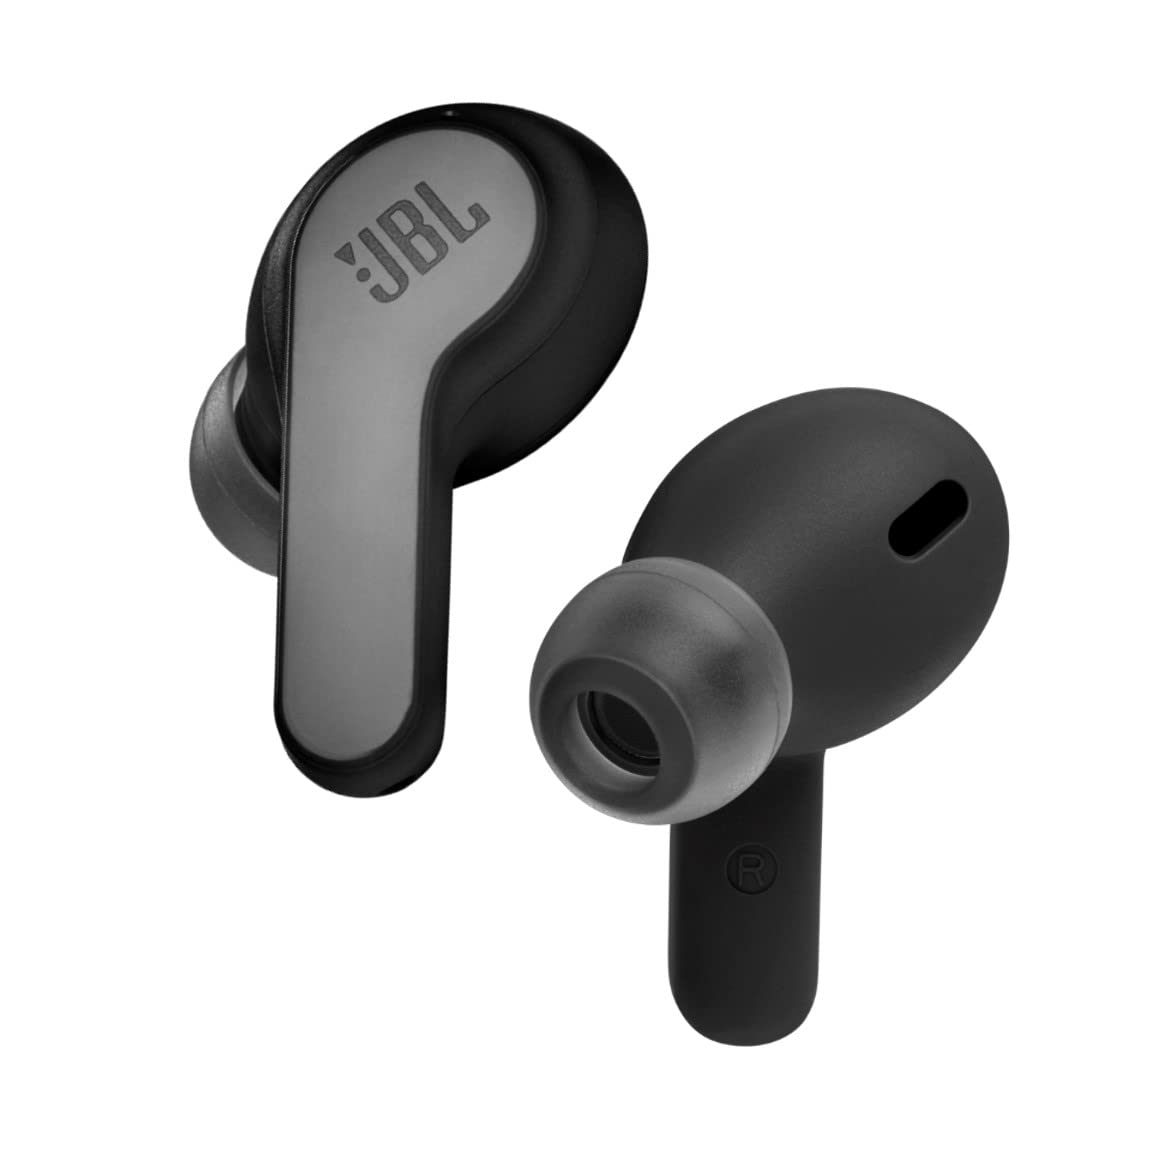 JBL Wave Buds True Wireless In-Ear Headphones JBLVBUDSWHTAM B&H